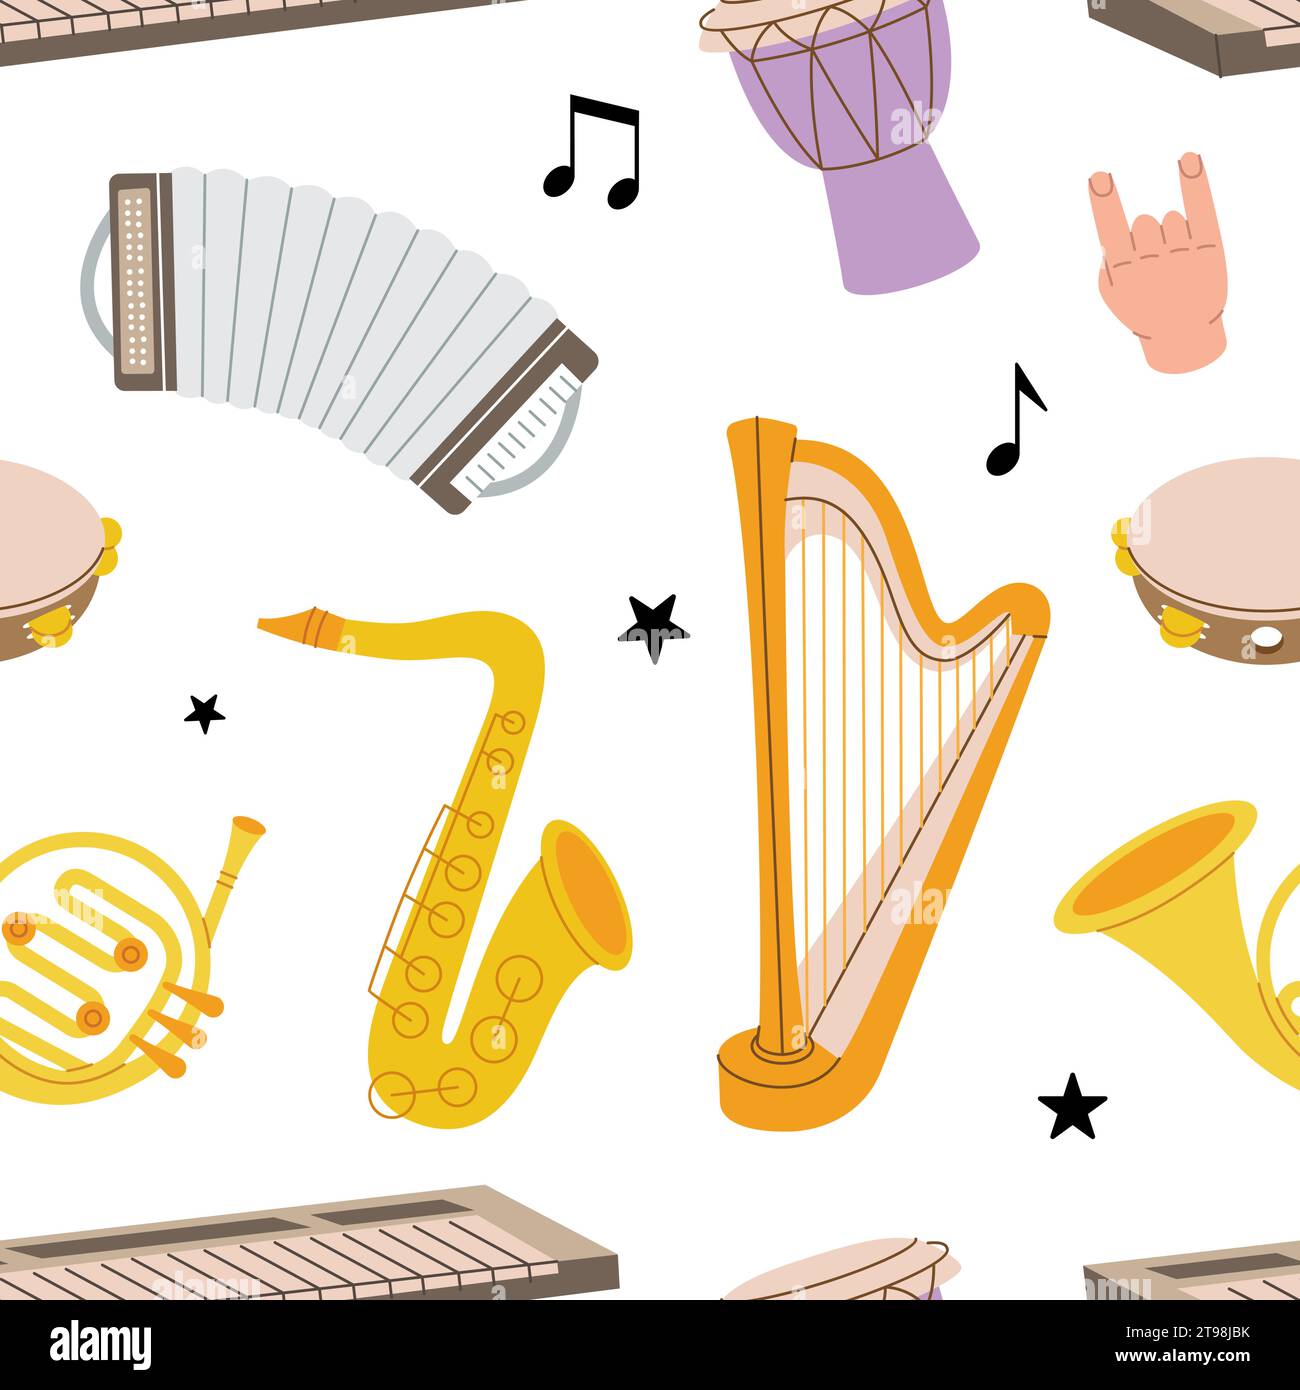 Musikinstrumentenmuster. Tuba, Trompete, Trommelflöte, Horn, Laute, Violine, Bassgitarre, Akustikgitarre. Farbige Musikinstrumente Stock Vektor